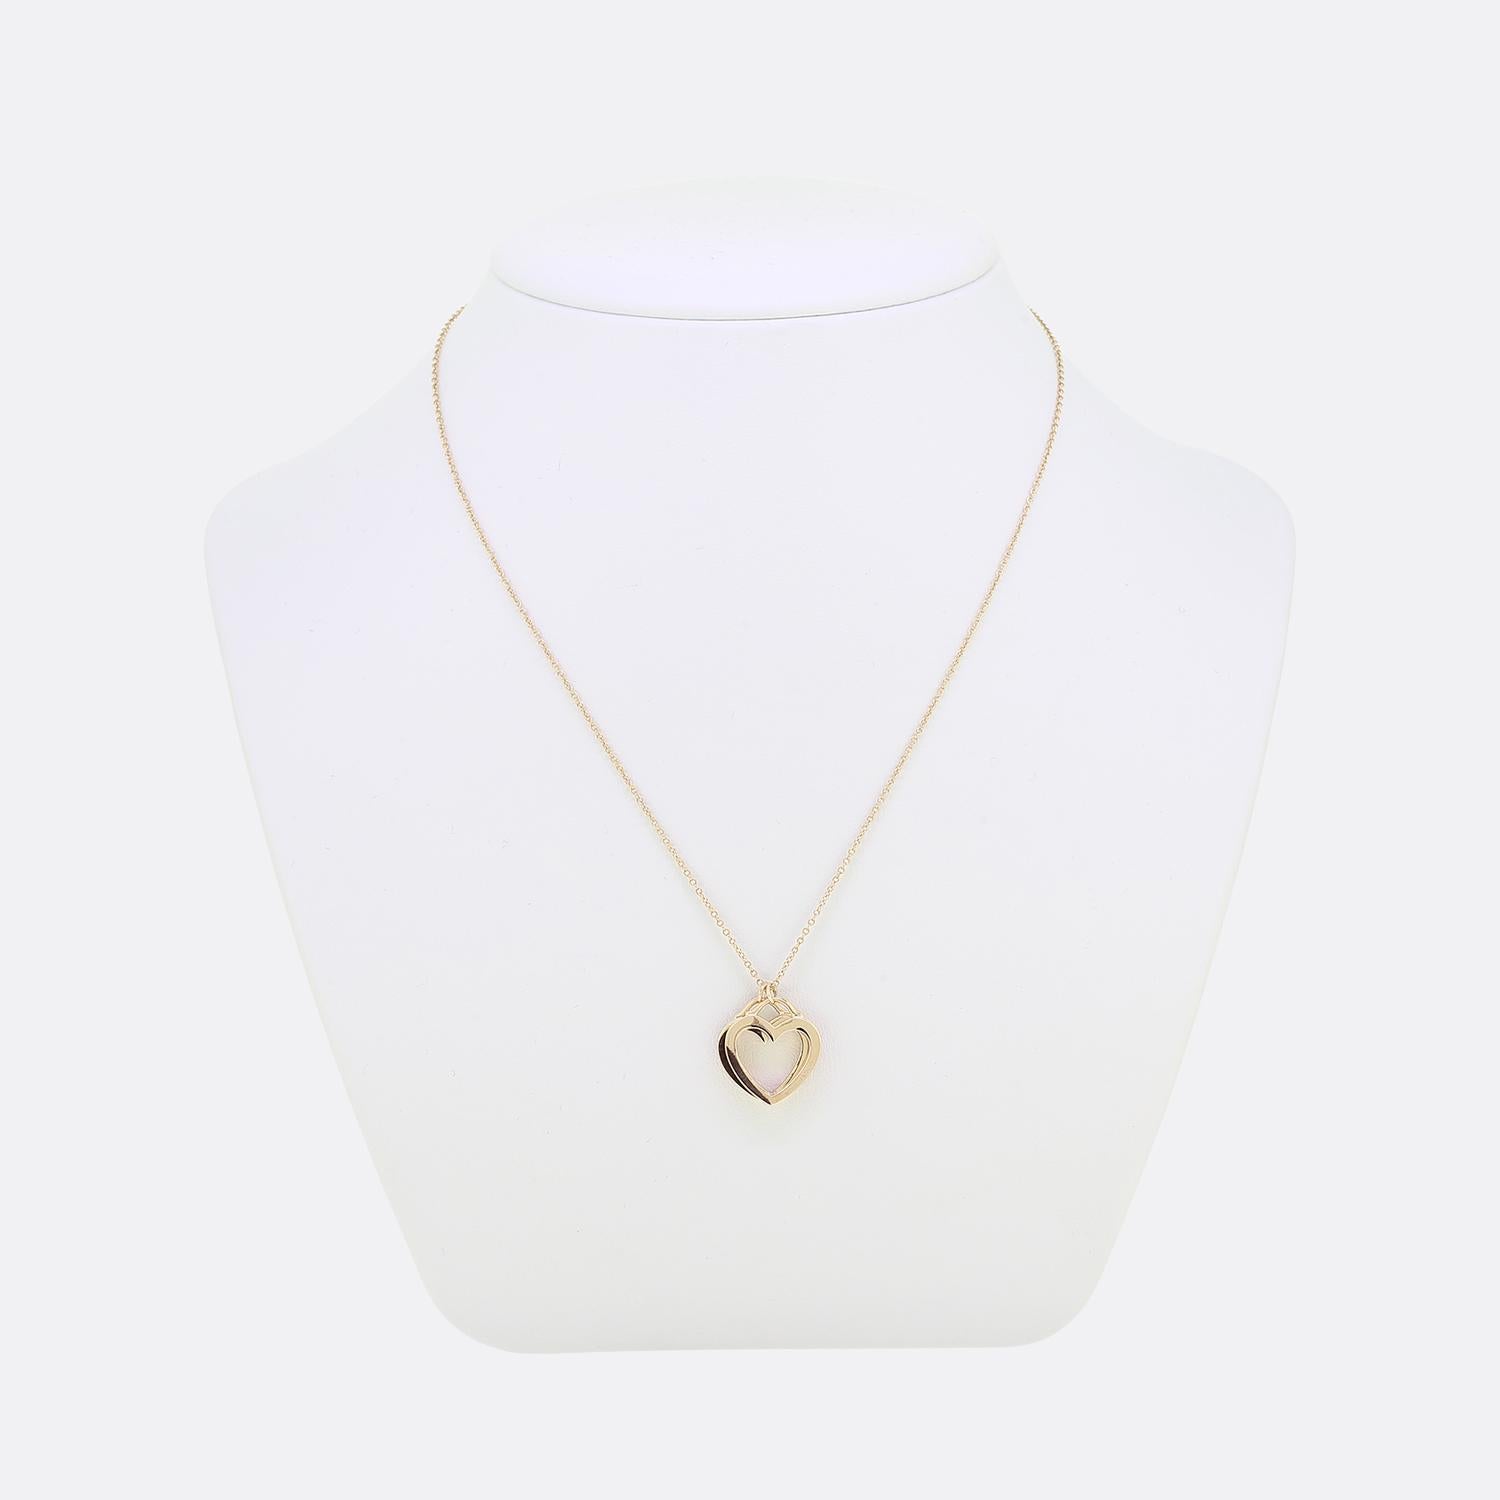 Nous avons ici un magnifique collier du célèbre créateur de bijoux de luxe Tiffany & Co. Le collier comporte deux cœurs ouverts qui peuvent glisser le long de la chaîne. Elle est fabriquée en or rose 18ct et constitue un modèle rare.


Condit :